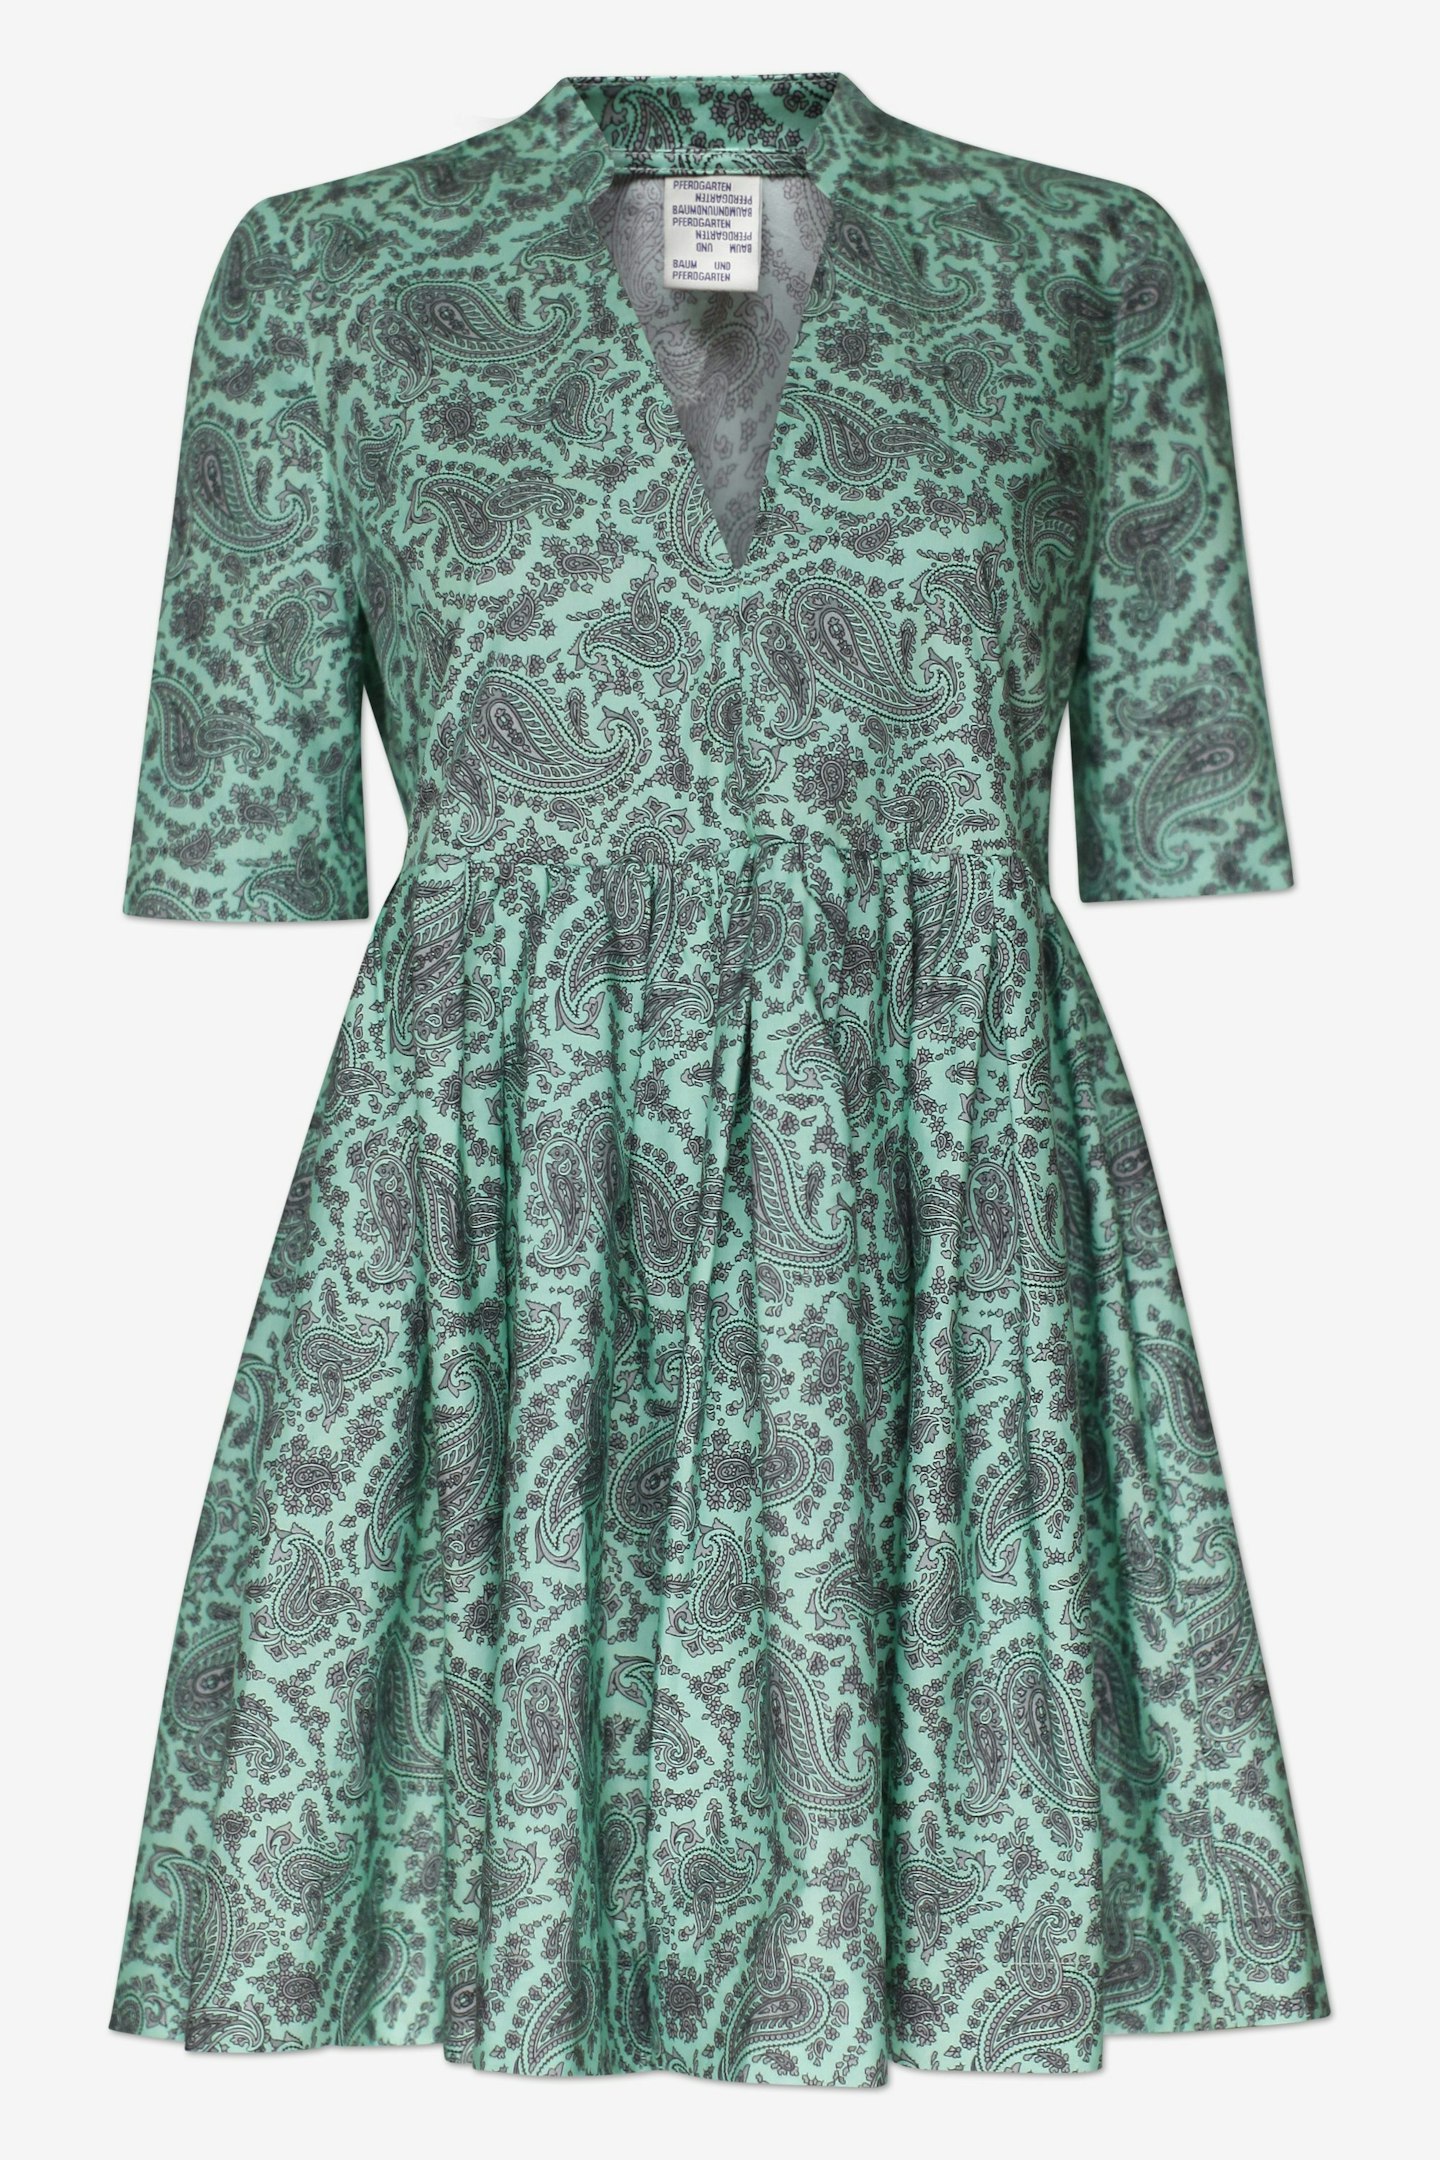 Baum Und Pferdgarten, Pleated Dress, £189